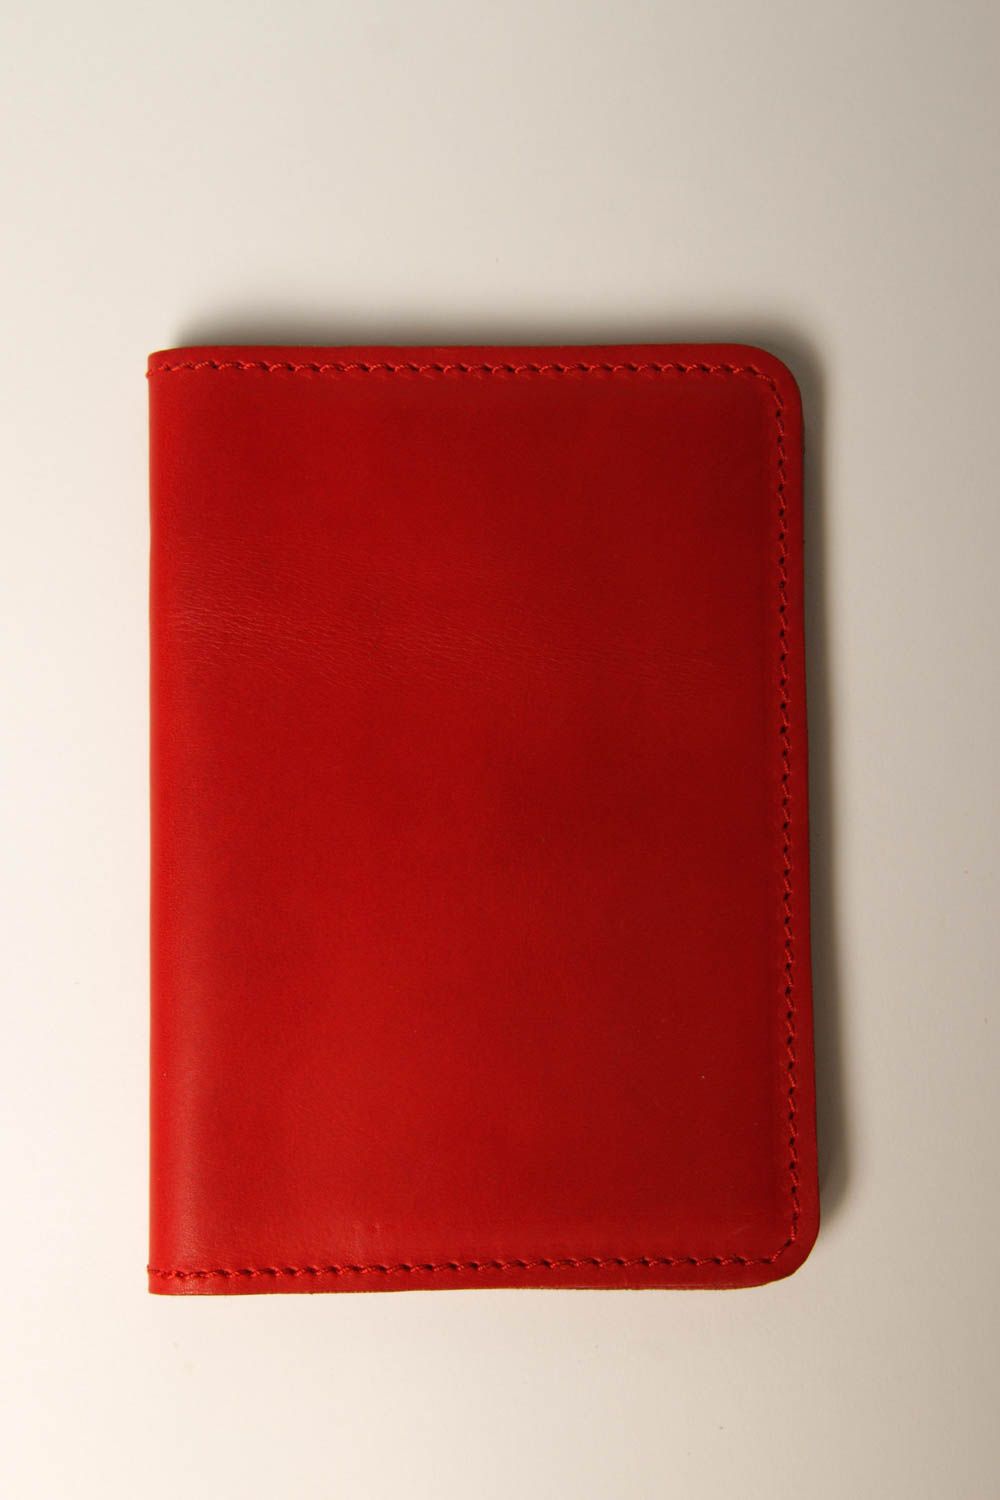 Кошелек ручной работы красный кожаный кошелек стильный кожаный аксессуар фото 2